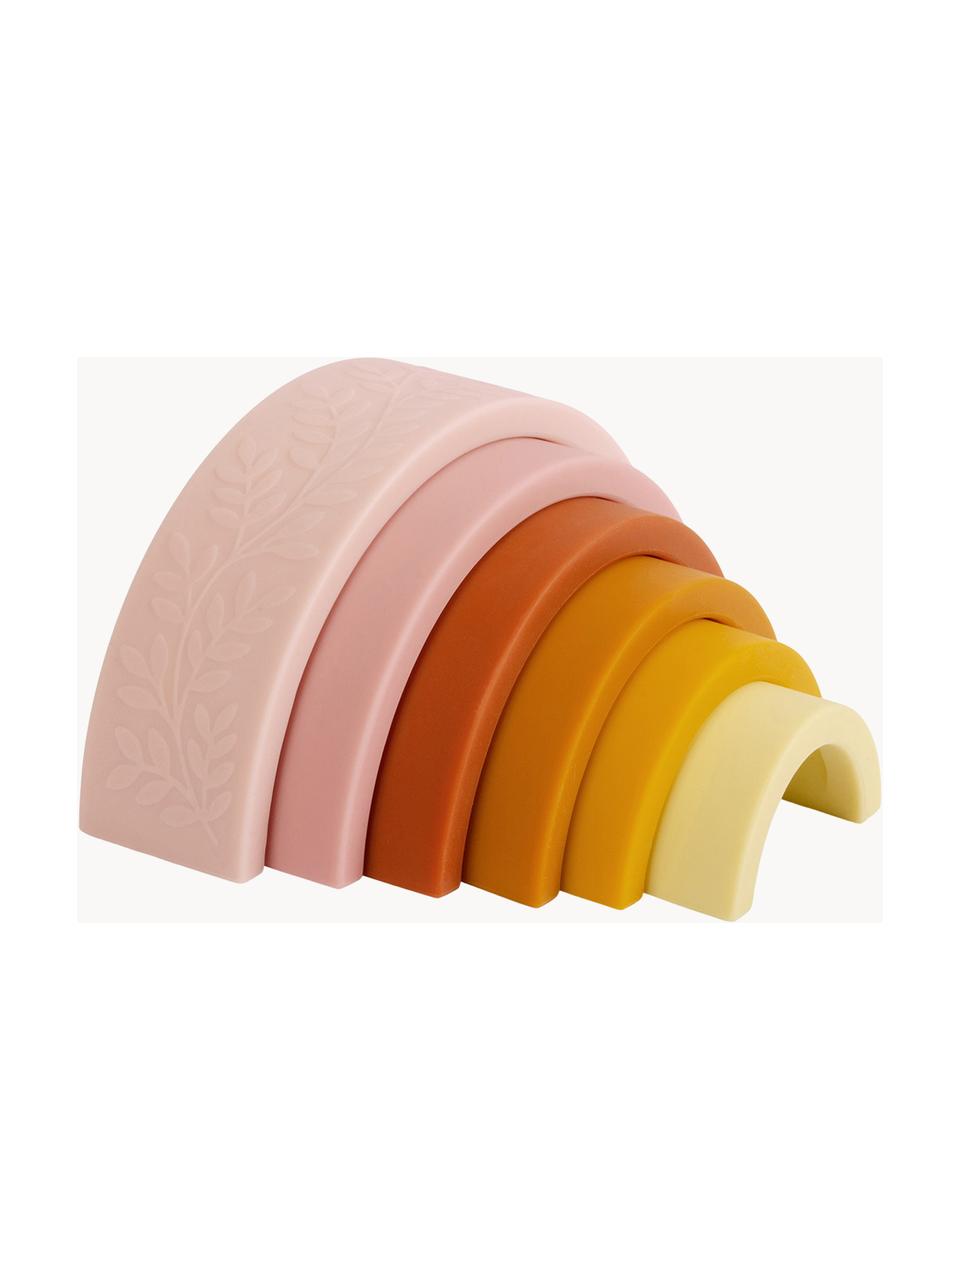 Stohovací hračka Rainbow, Silikon, Odstíny růžové, žluté a oranžové, Š 15 cm, V 7 cm